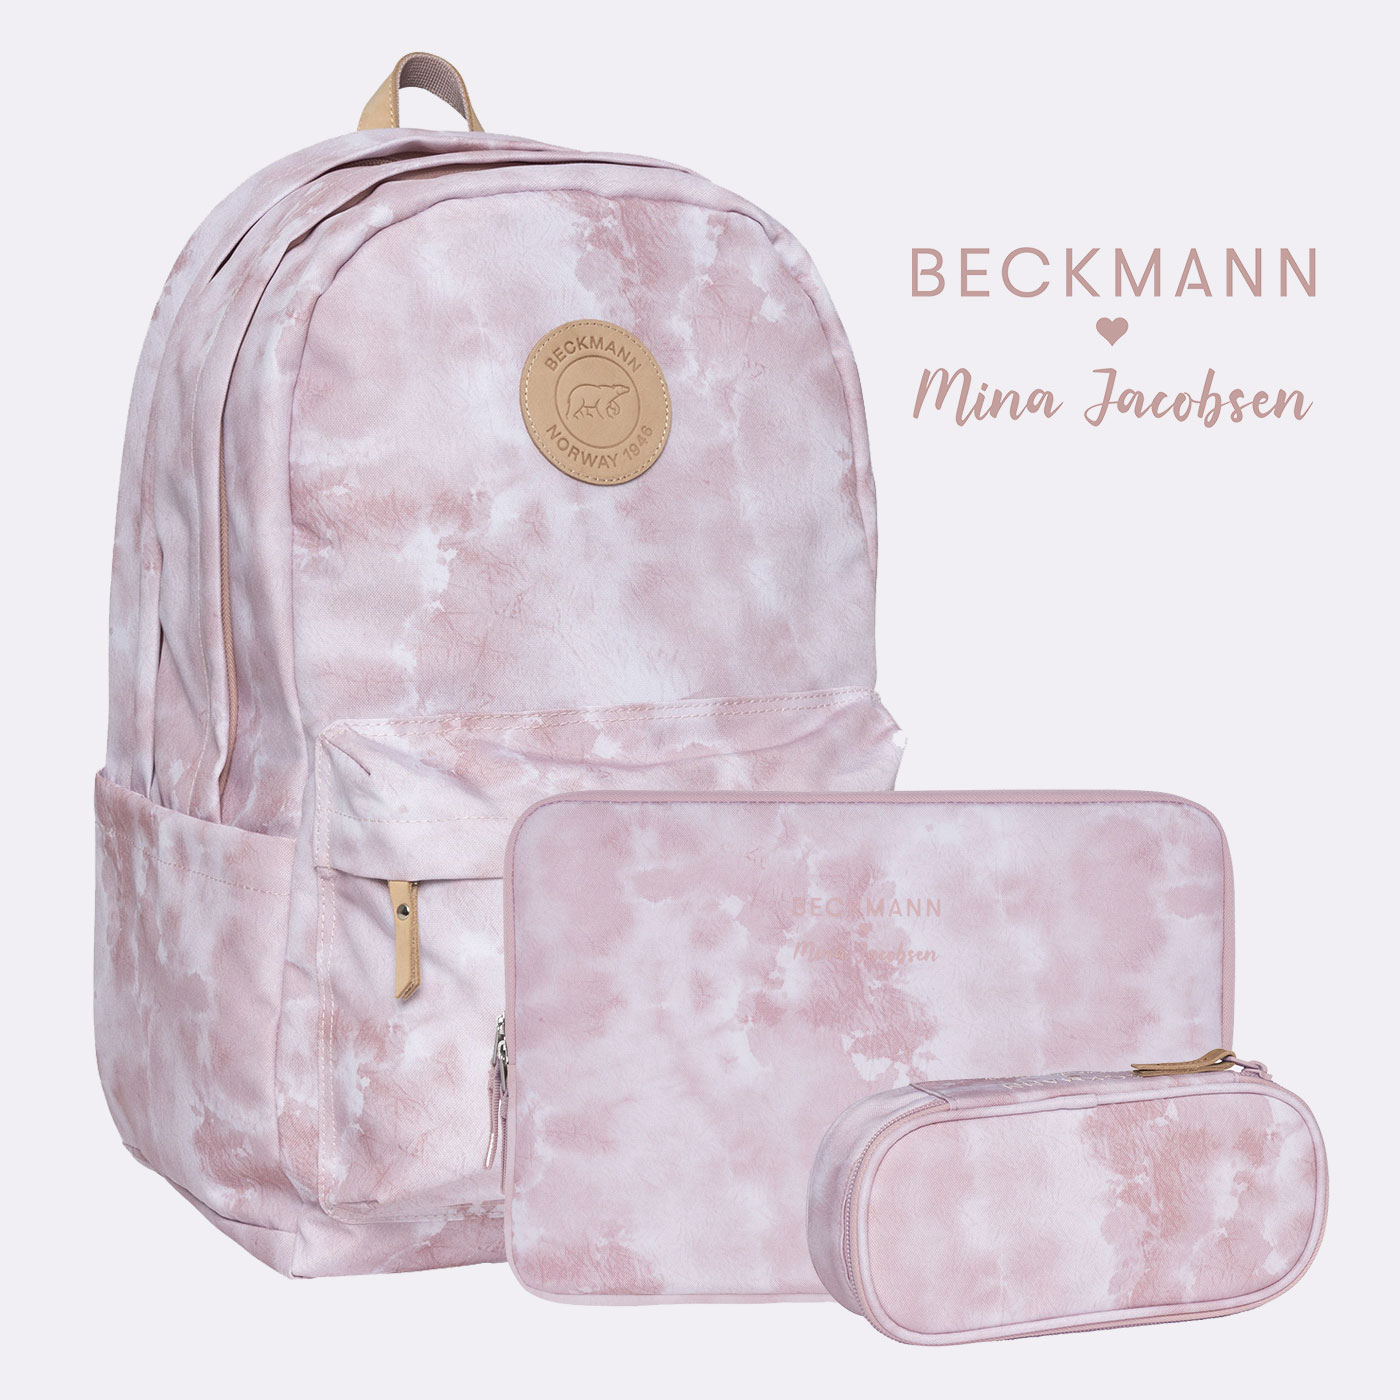 Organic Pink sett, Mina Jacobsen - Beckmann